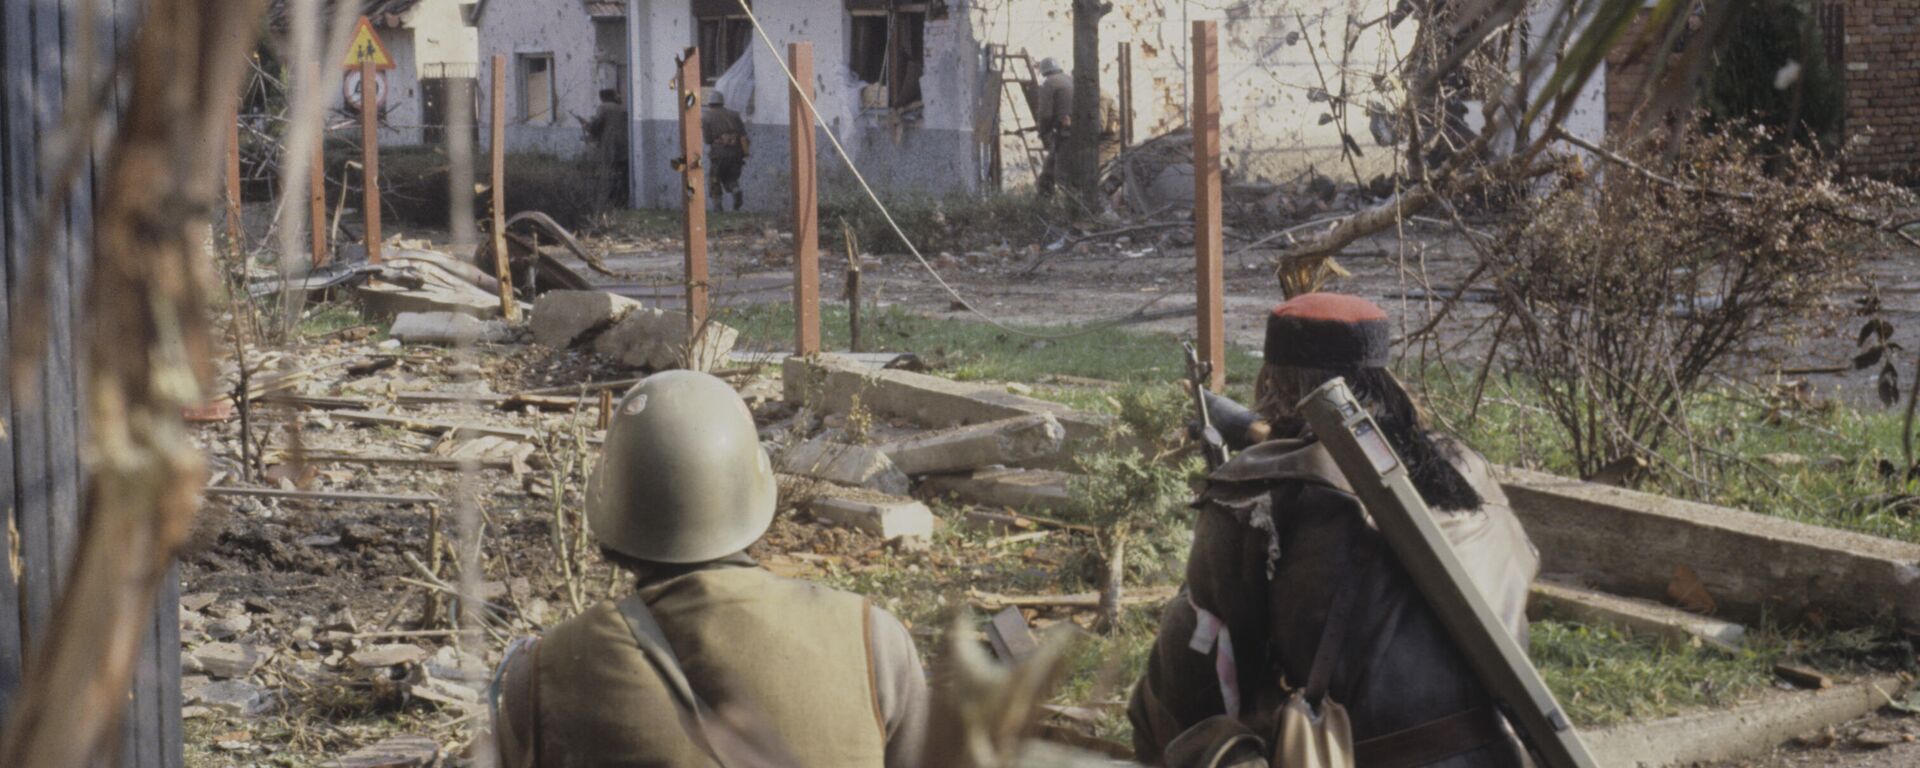 Вуковар током сукоба 1991. године - Sputnik Србија, 1920, 18.11.2021